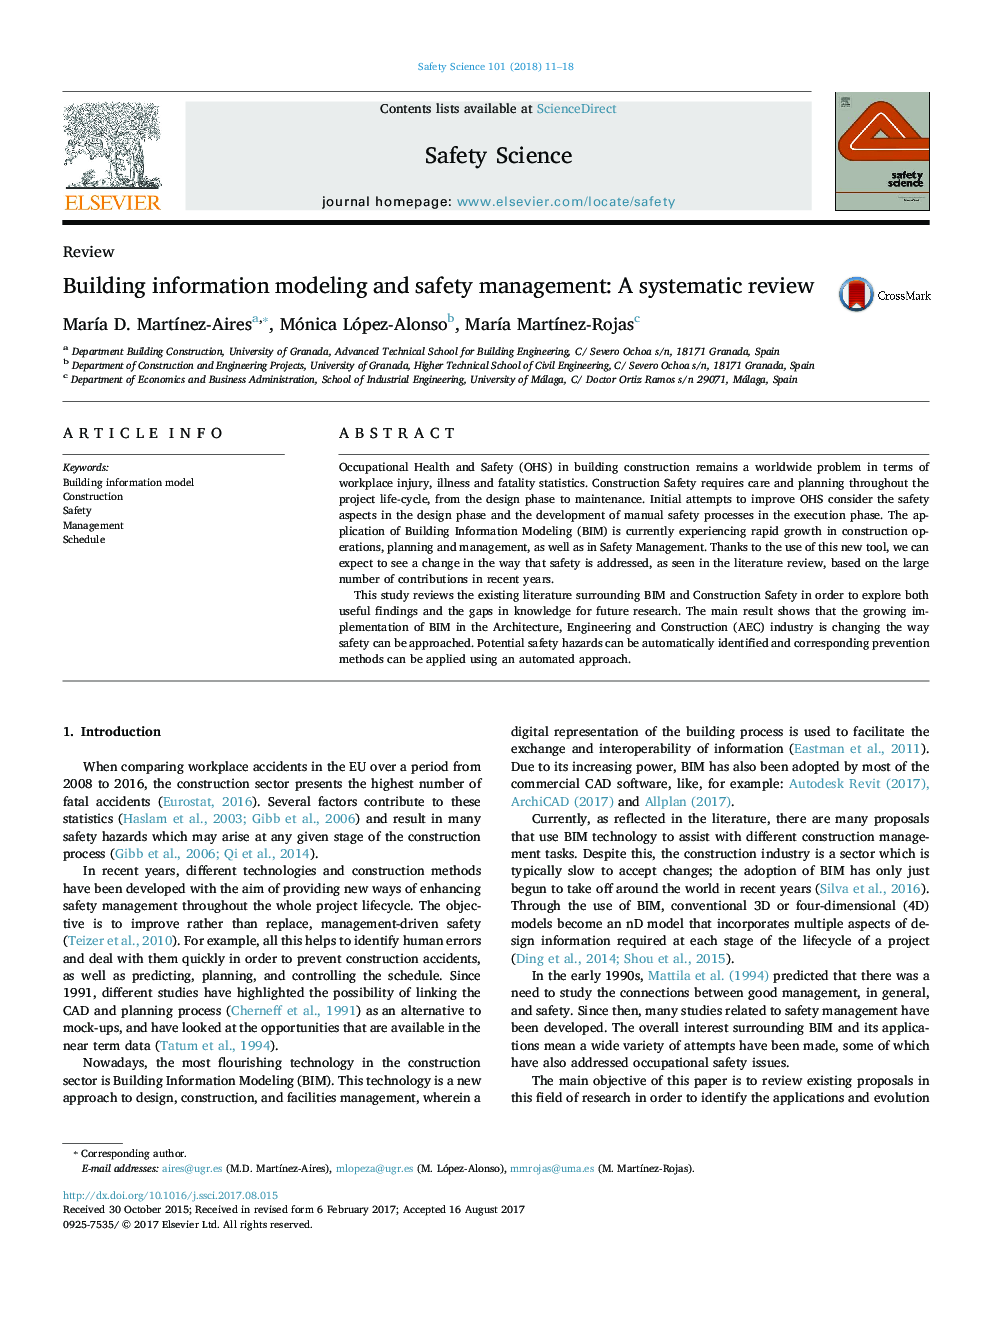 مدل سازی اطلاعات ساختمان و مدیریت ایمنی: بررسی سیستماتیک